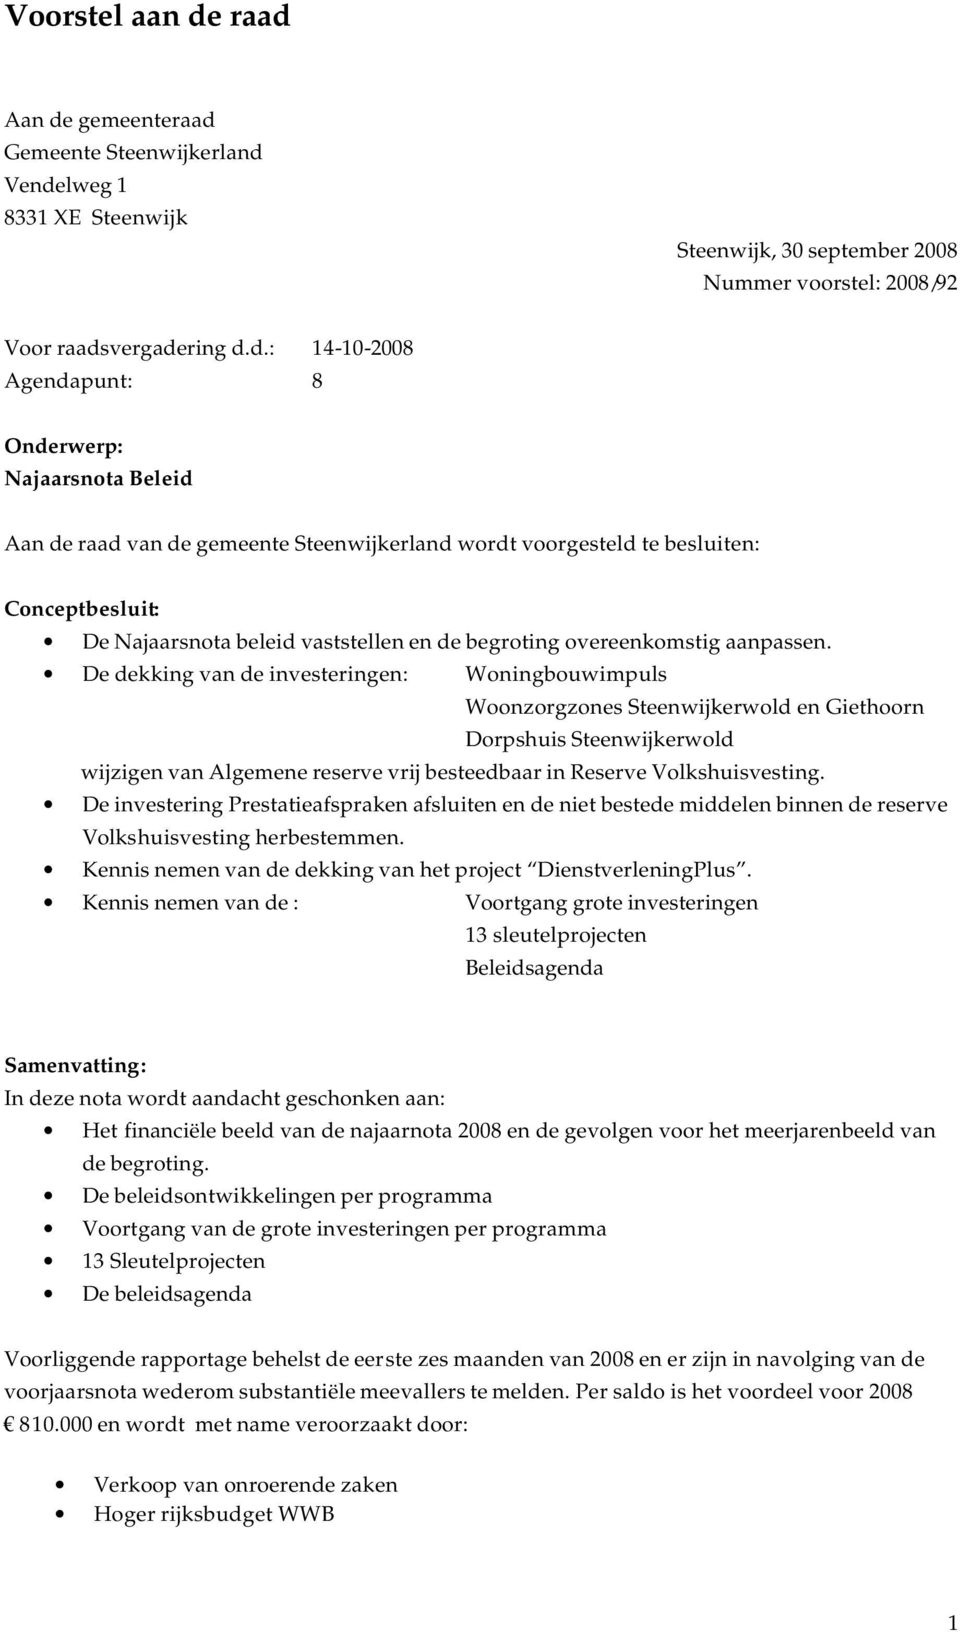 Najaarsnota Beleid Aan de raad van de gemeente Steenwijkerland wordt voorgesteld te besluiten: Conceptbesluit: De Najaarsnota beleid vaststellen en de begroting overeenkomstig aanpassen.